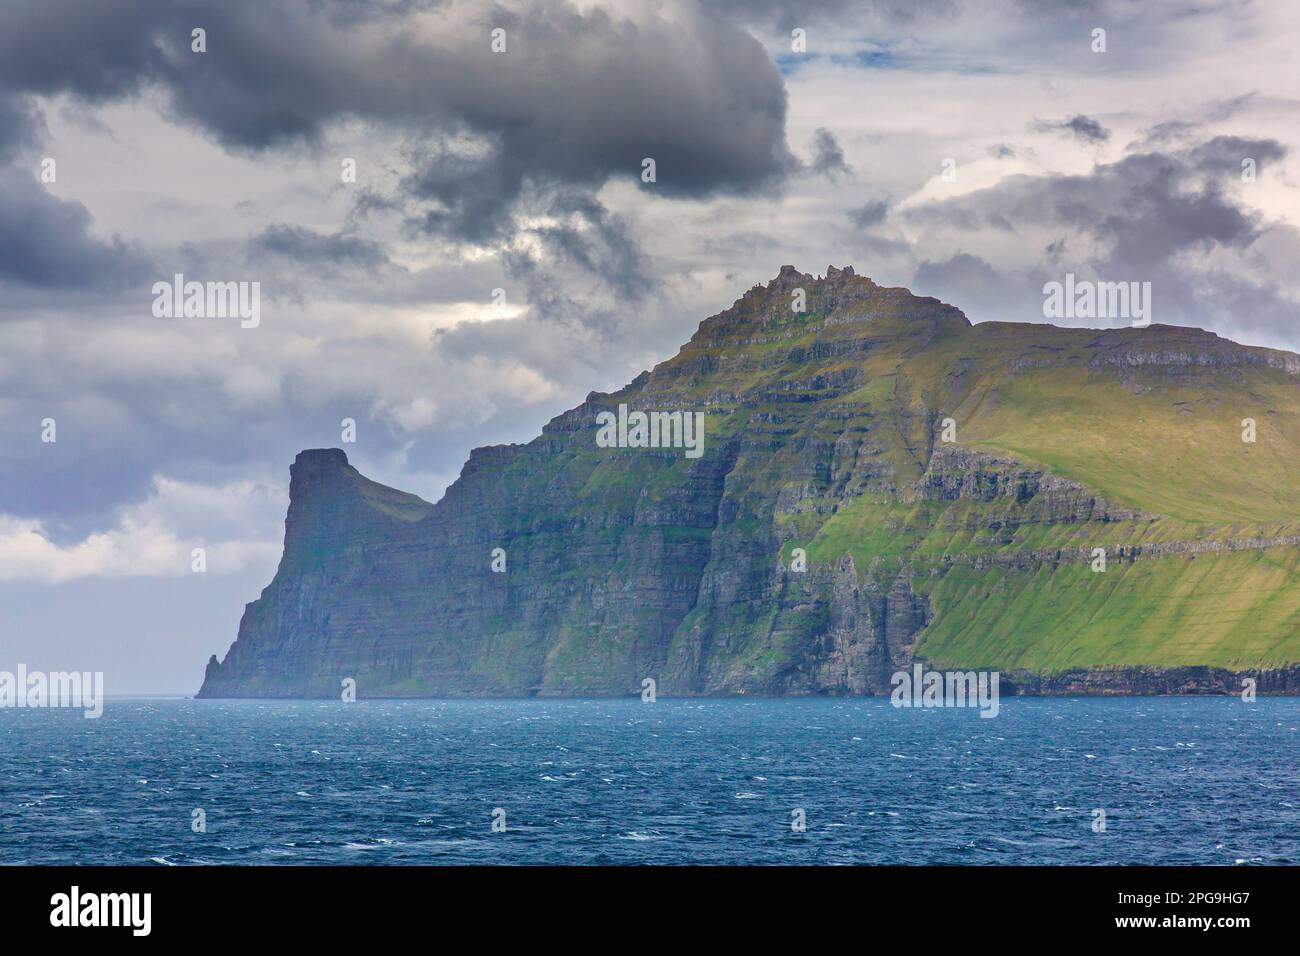 Scogliere sul mare lungo la costa frastagliata di Eysturoy / Isola Est, regione e seconda più grande delle Isole Faroe / Faroes nel Nord Atlantico Foto Stock